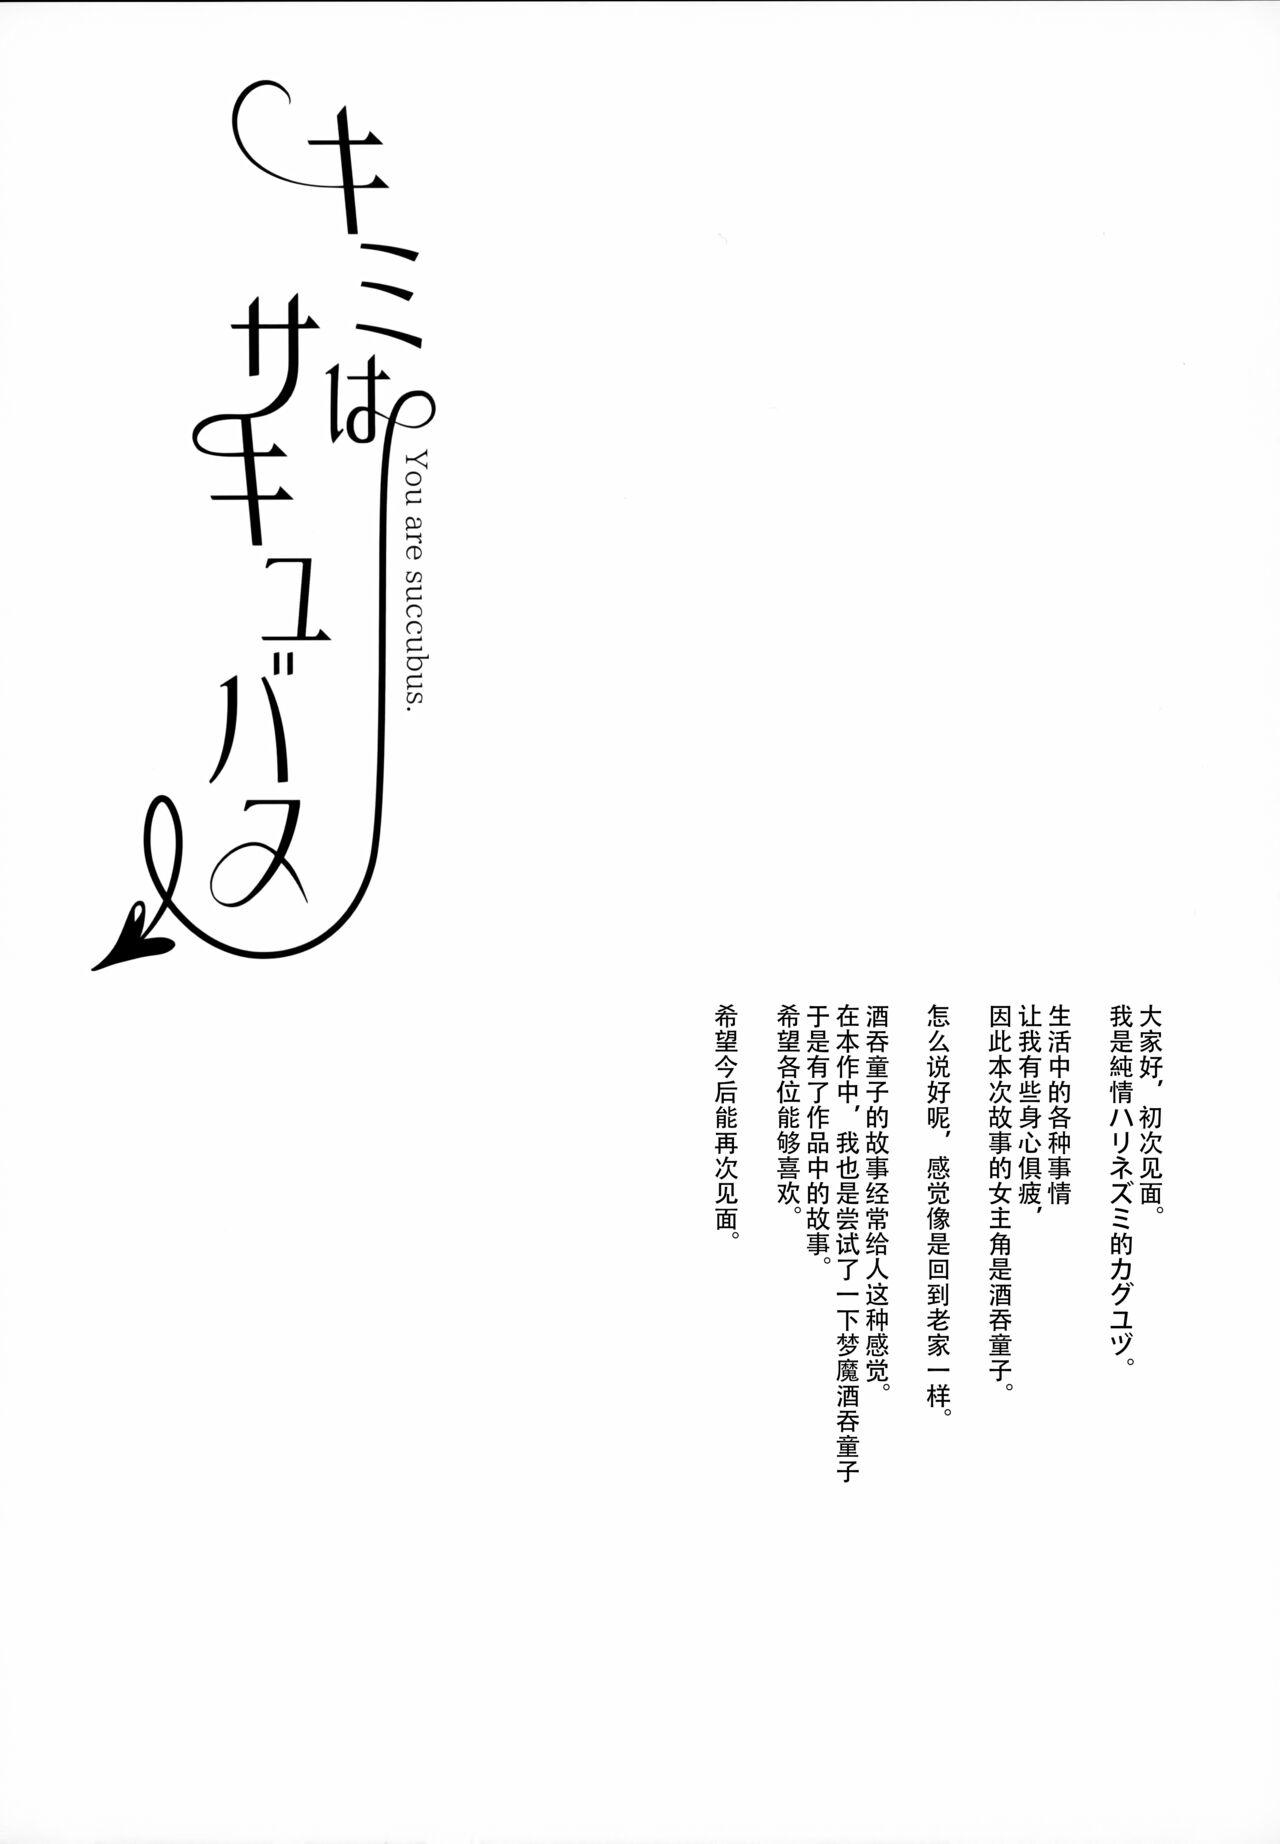 Grande Kimi wa Succubus - Fate grand order Chibola - Picture 3